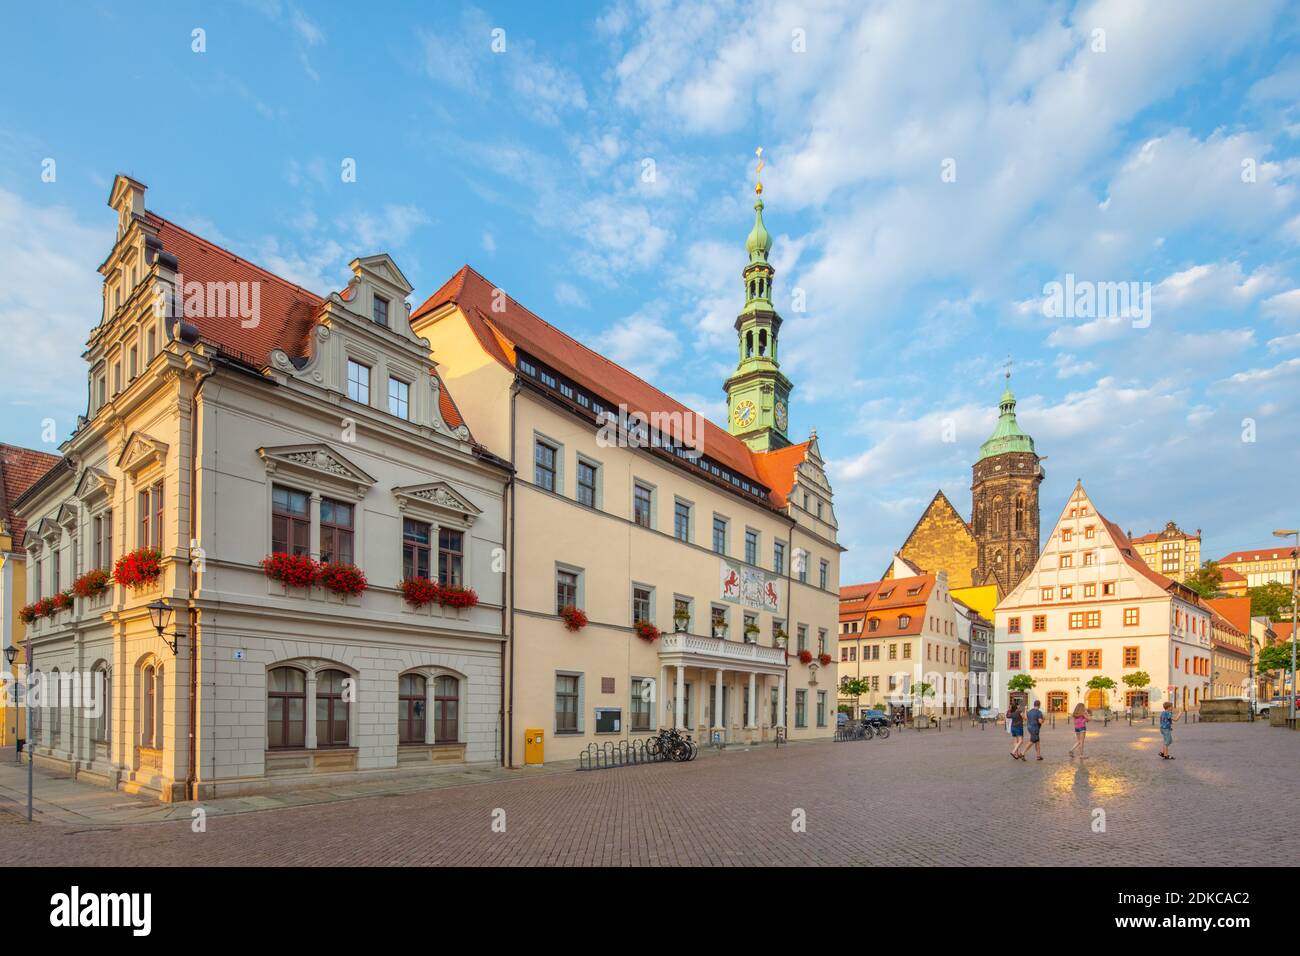 Deutschland, Sachsen, Sächsische Schweiz, Stadt Pirna, Marktplatz mit Rathaus Banque D'Images